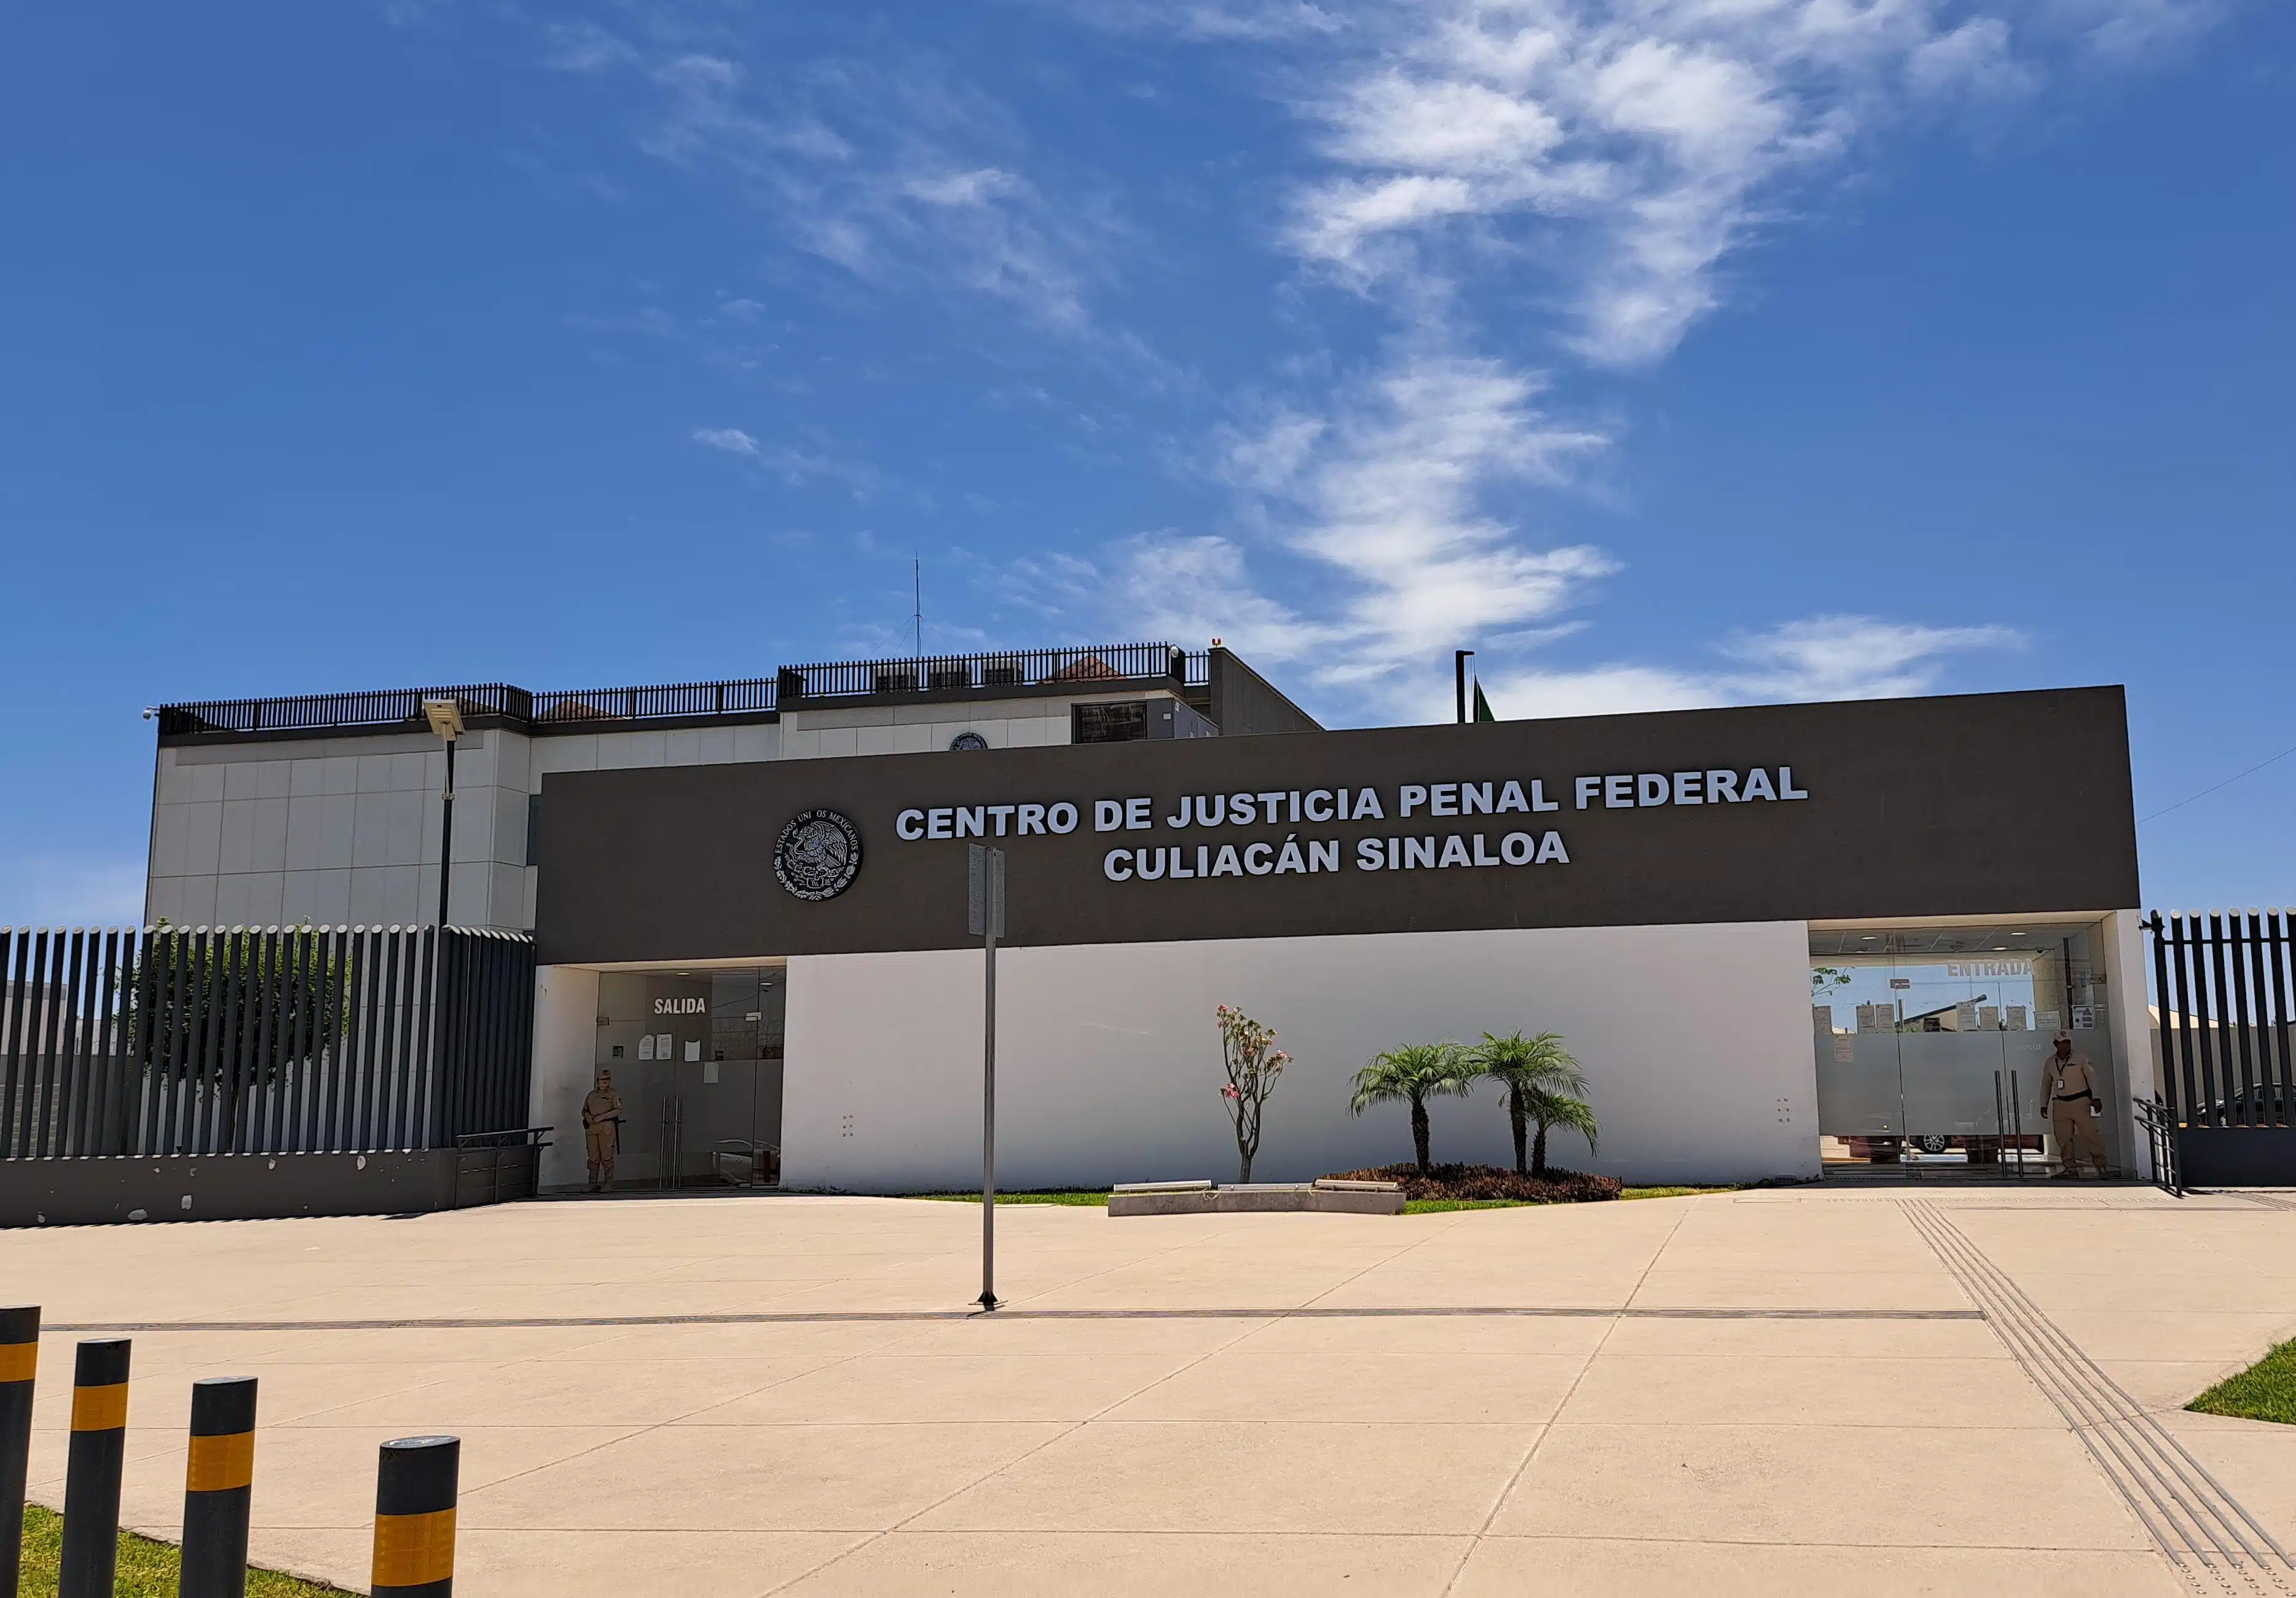 Centro de Justicia Penal Federal Culiacán